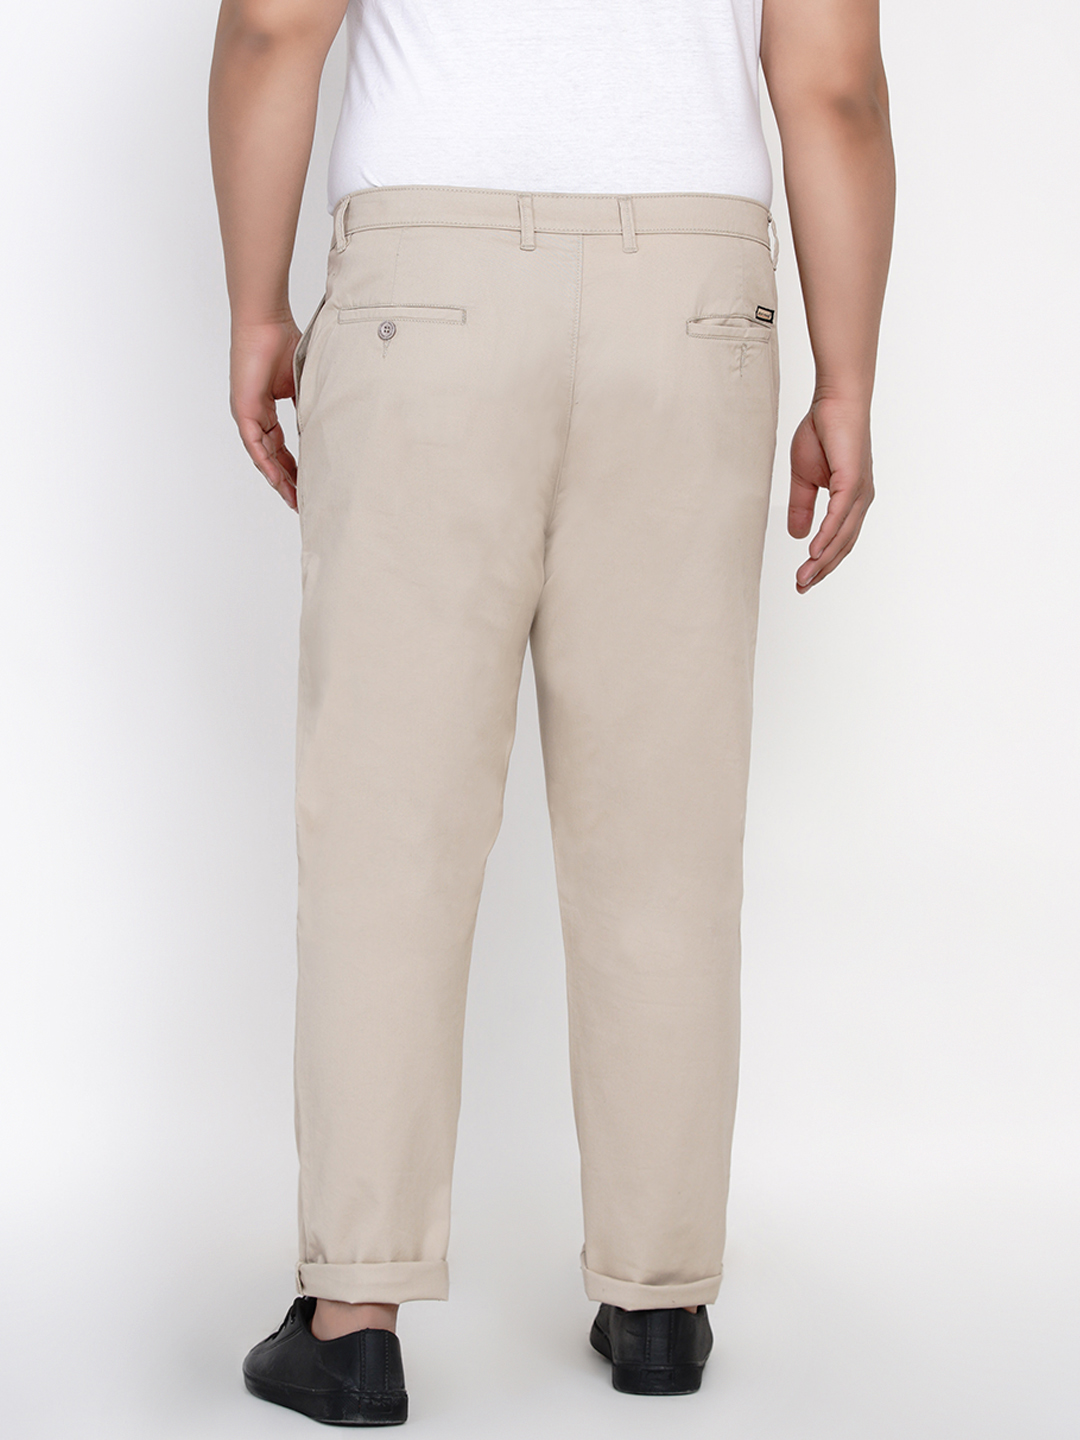 bottomwear/trousers/JPTR2161C/jptr2161c-5.jpg